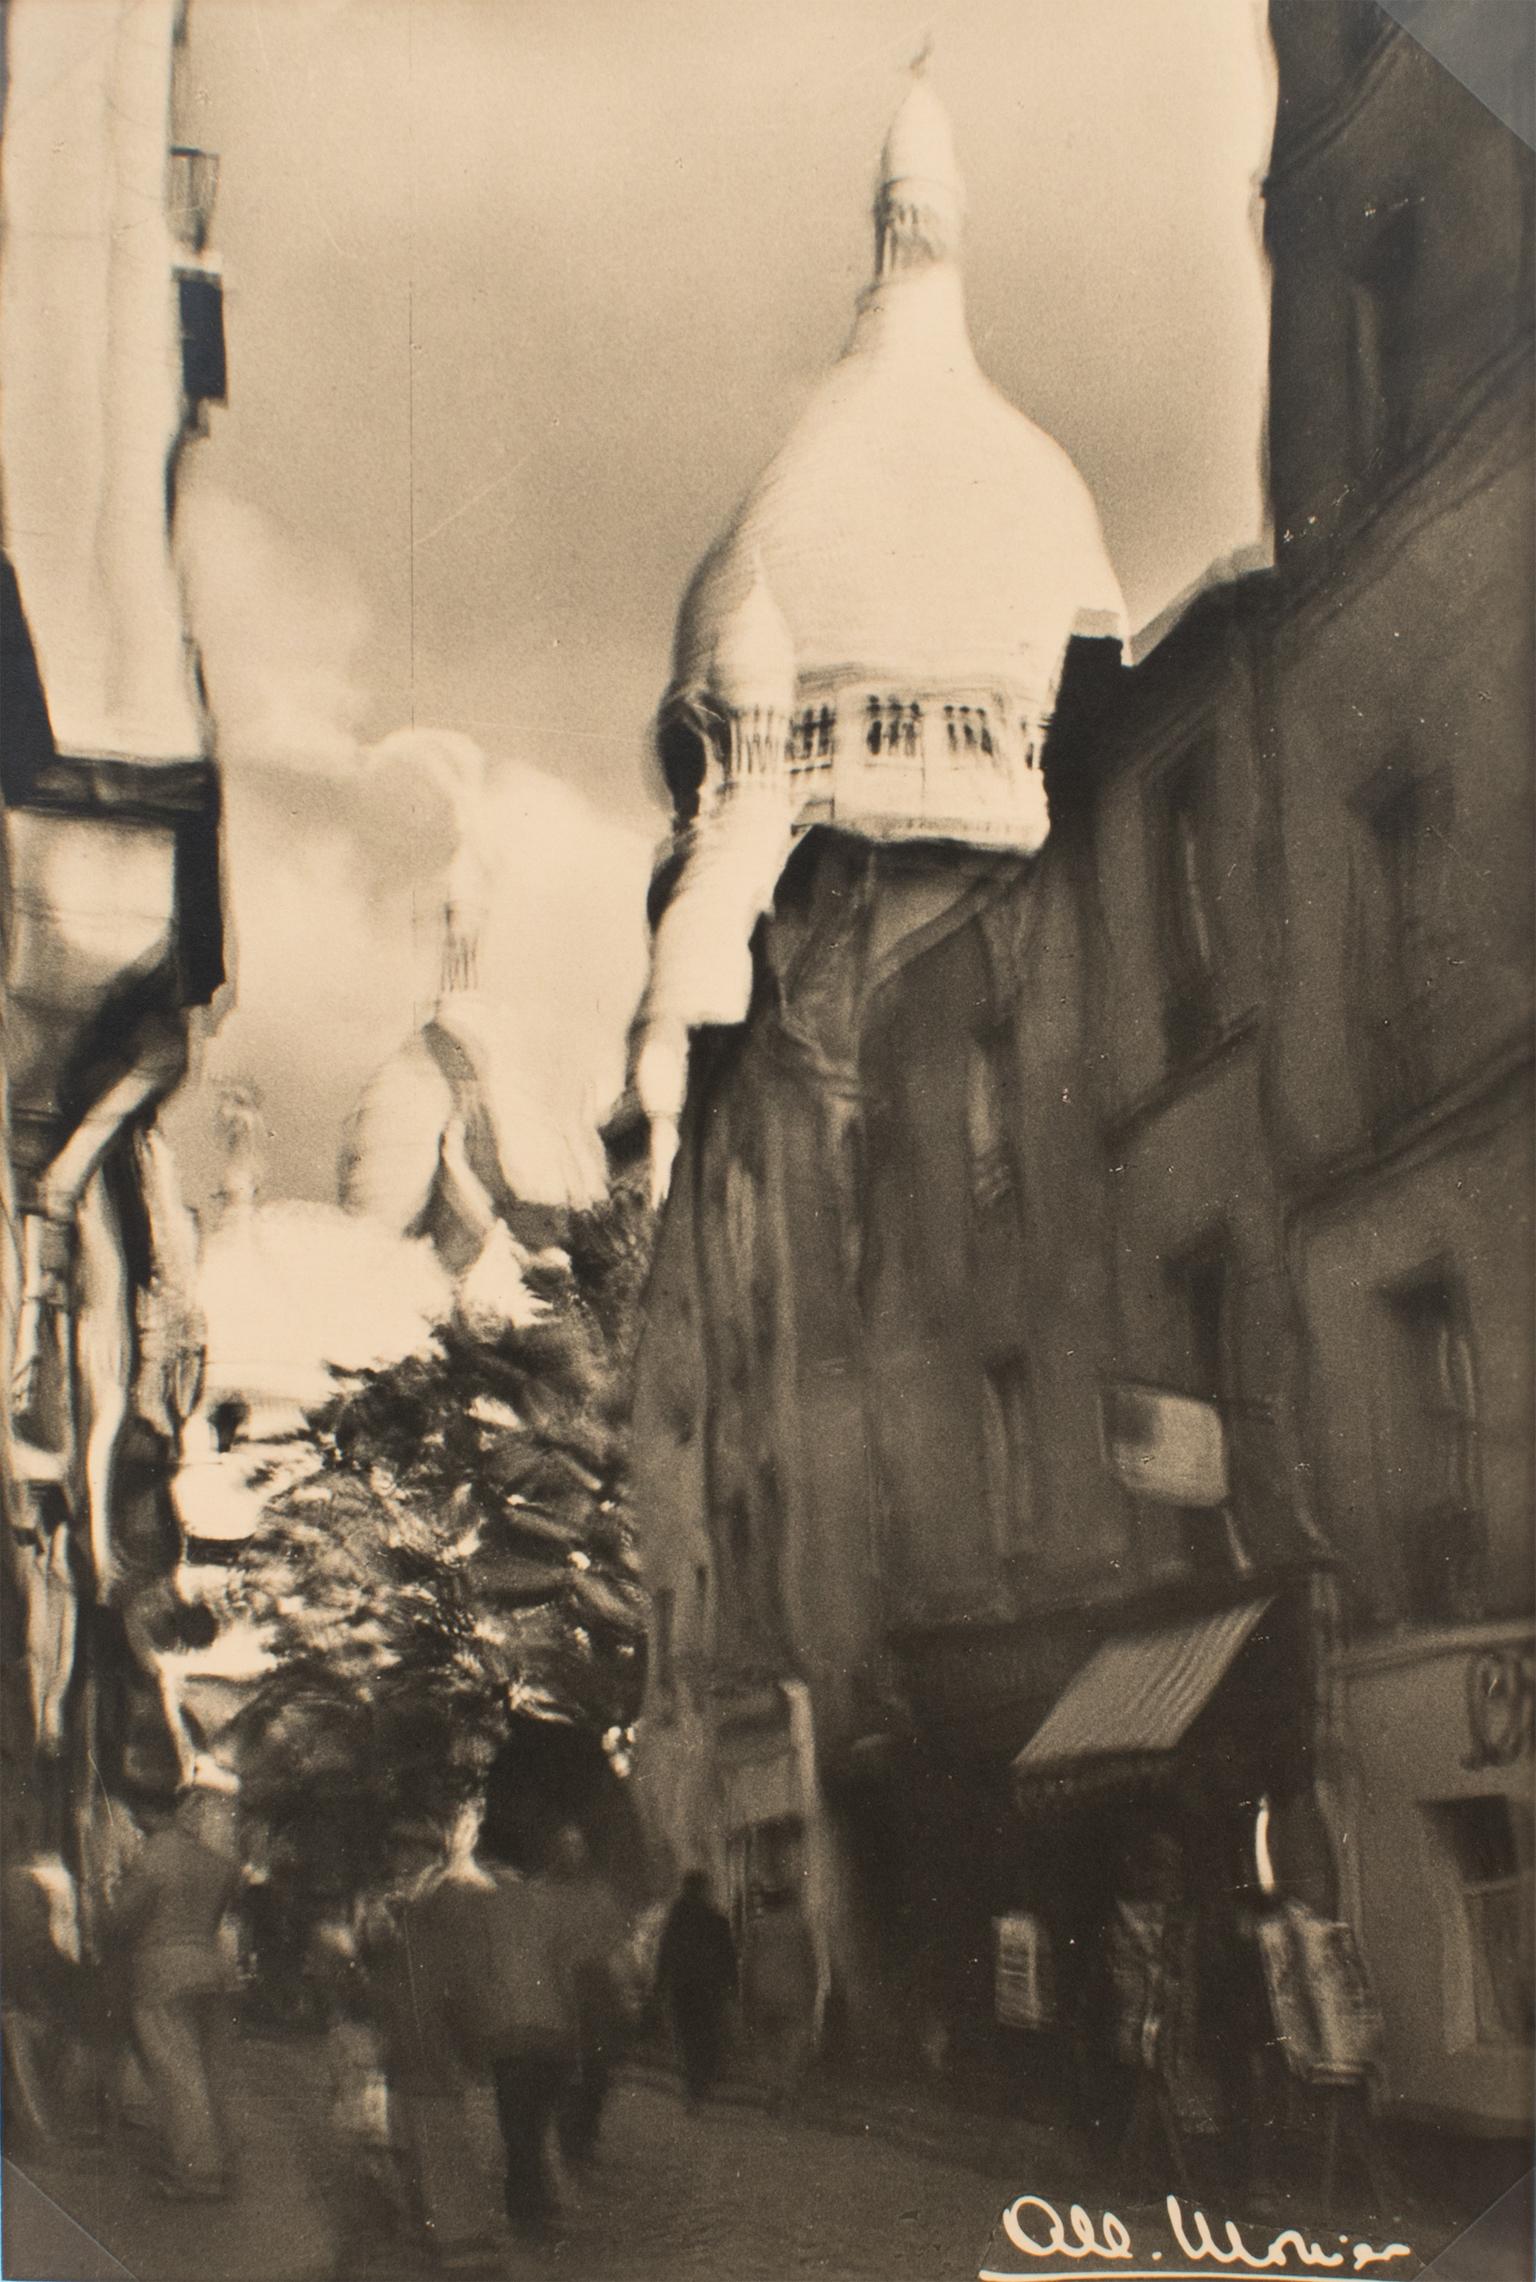 Albert Monier Landscape Photograph - Montmartre District in Paris, Black and White Original Photograph Postcard